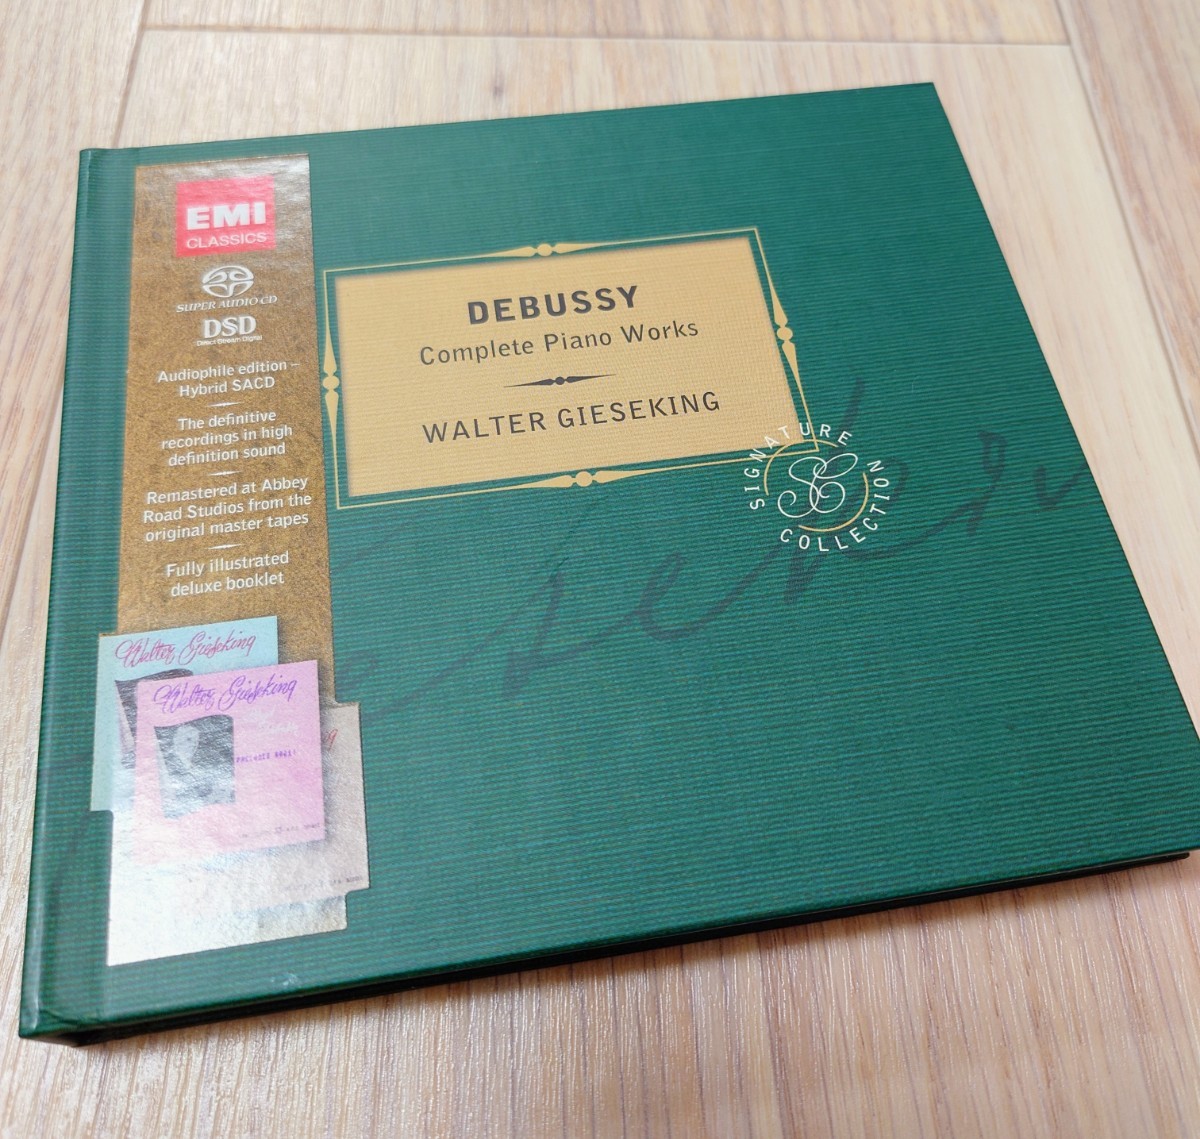 Debussy ドビュッシー SACD ピアノ曲全集 ギーゼキング 美品 EMI